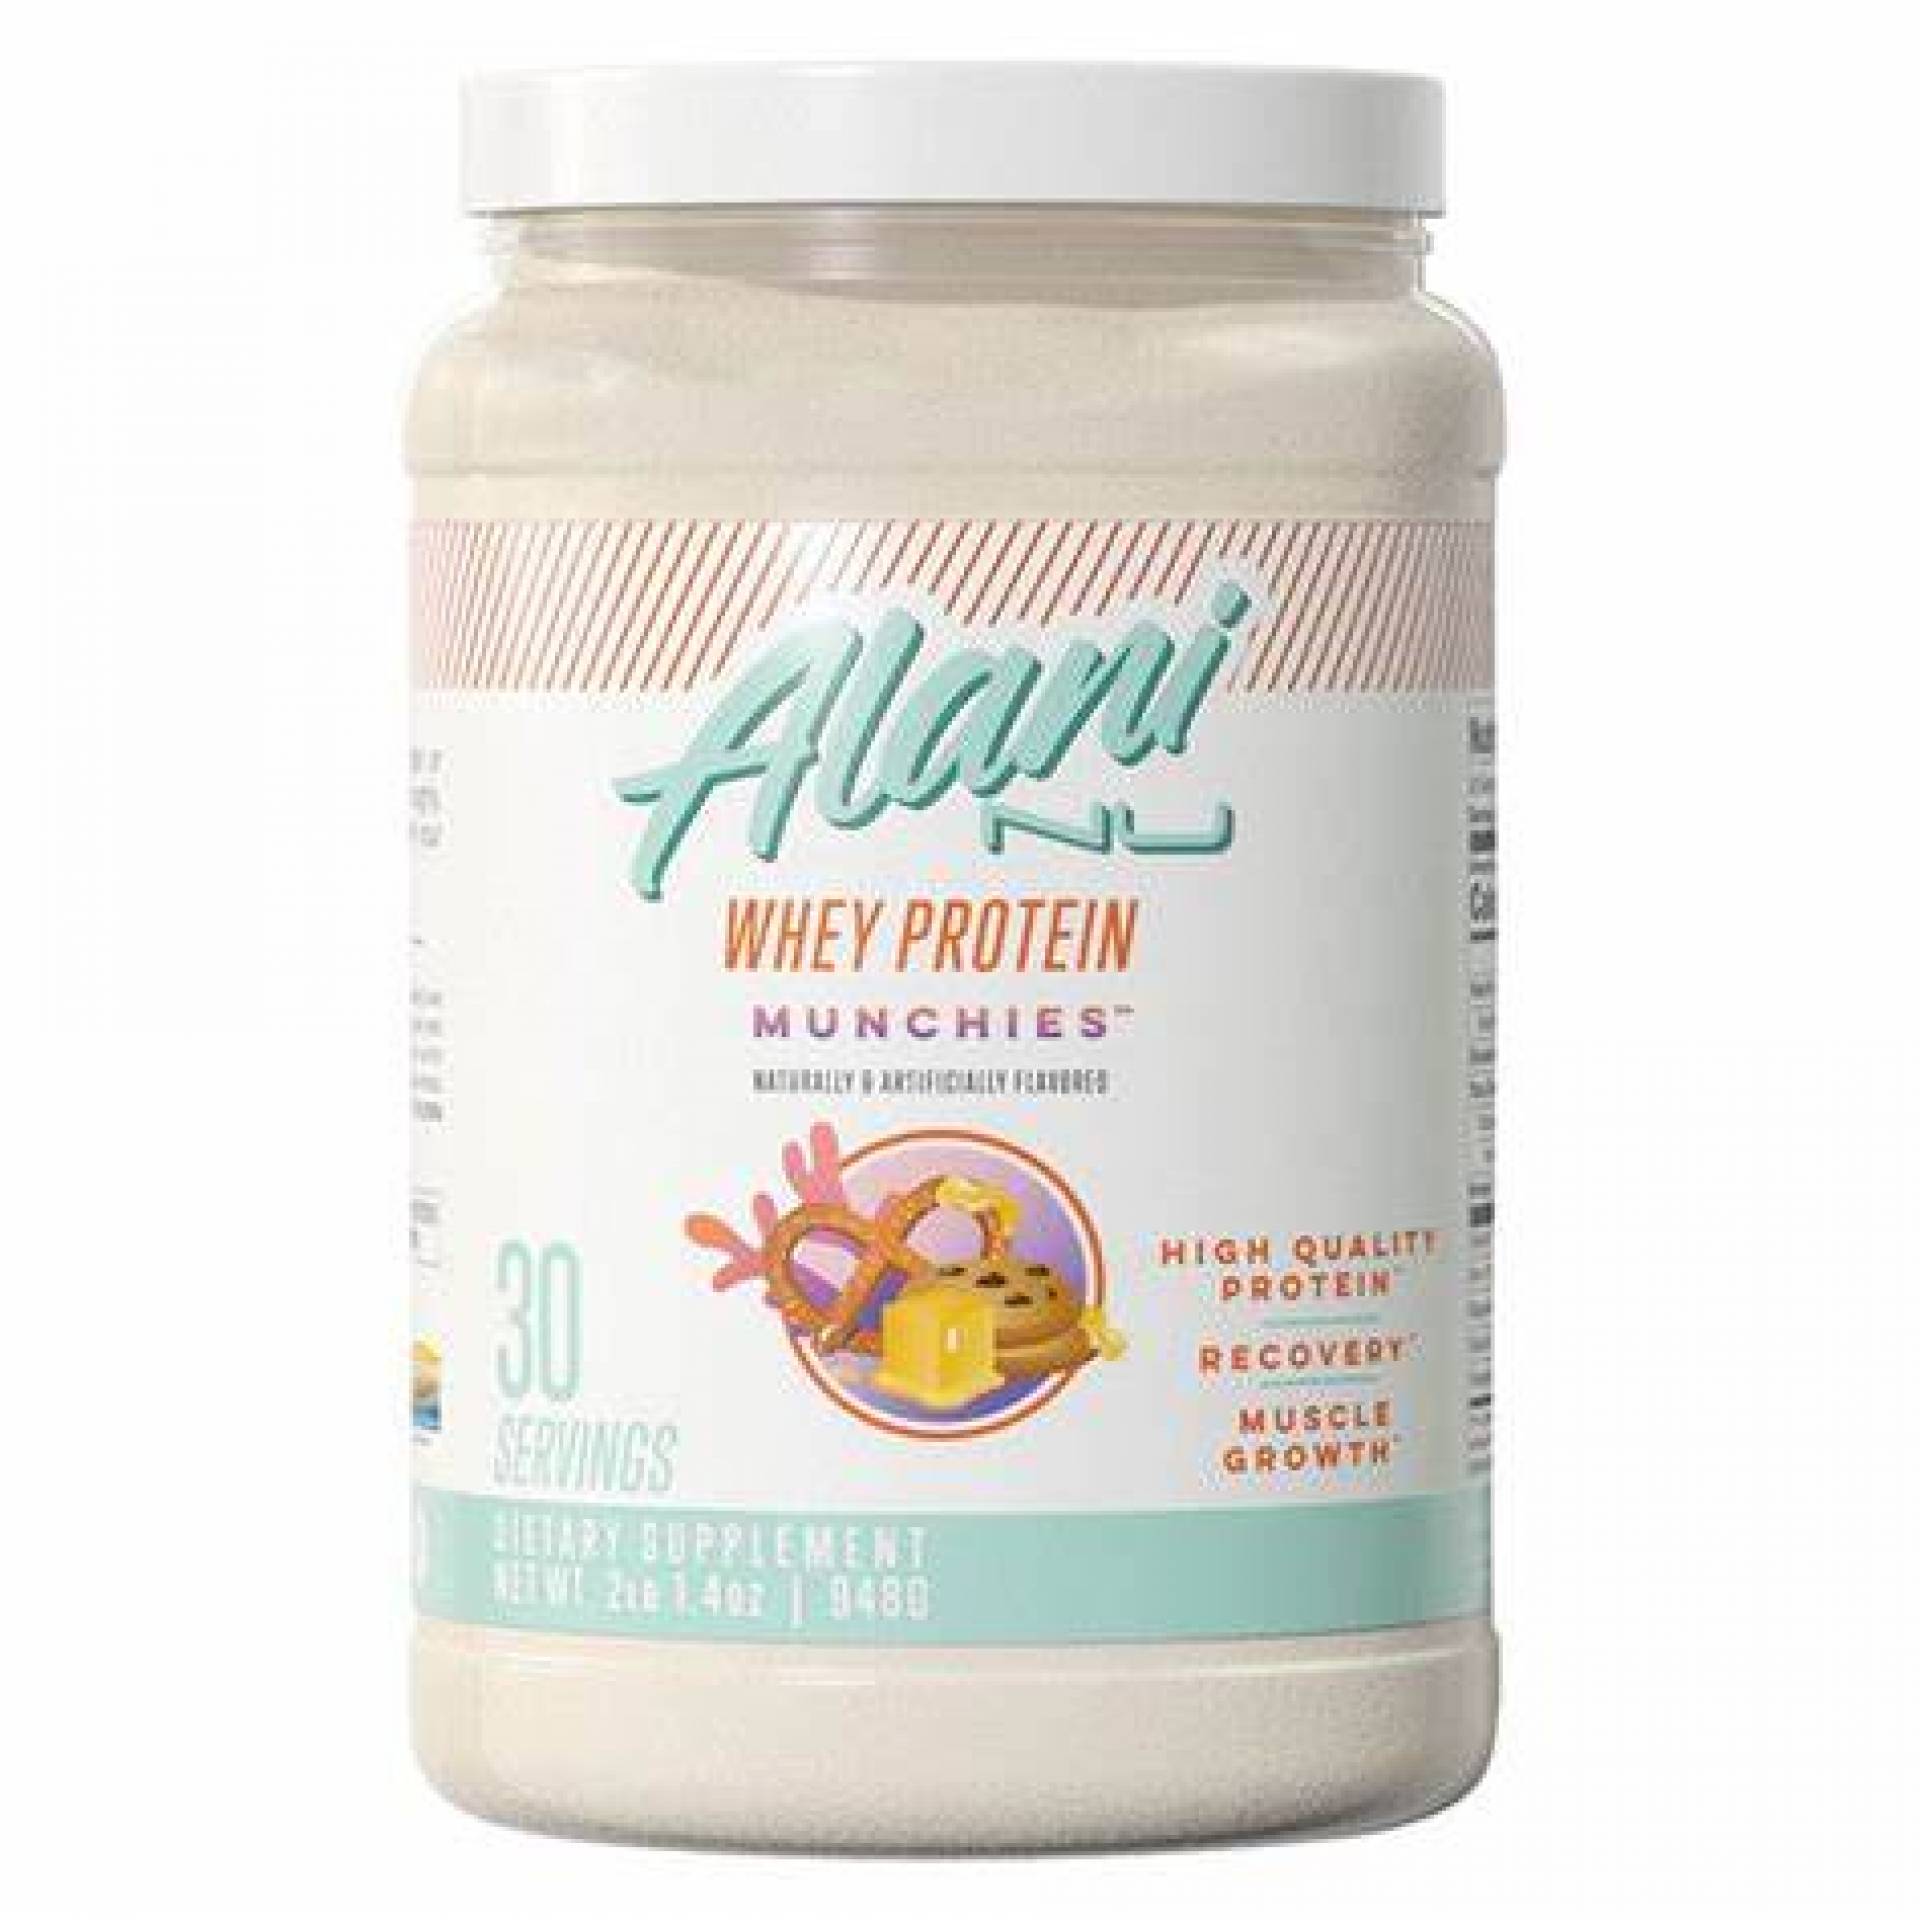 Alani Nu Whey Protein Powders - $58.99